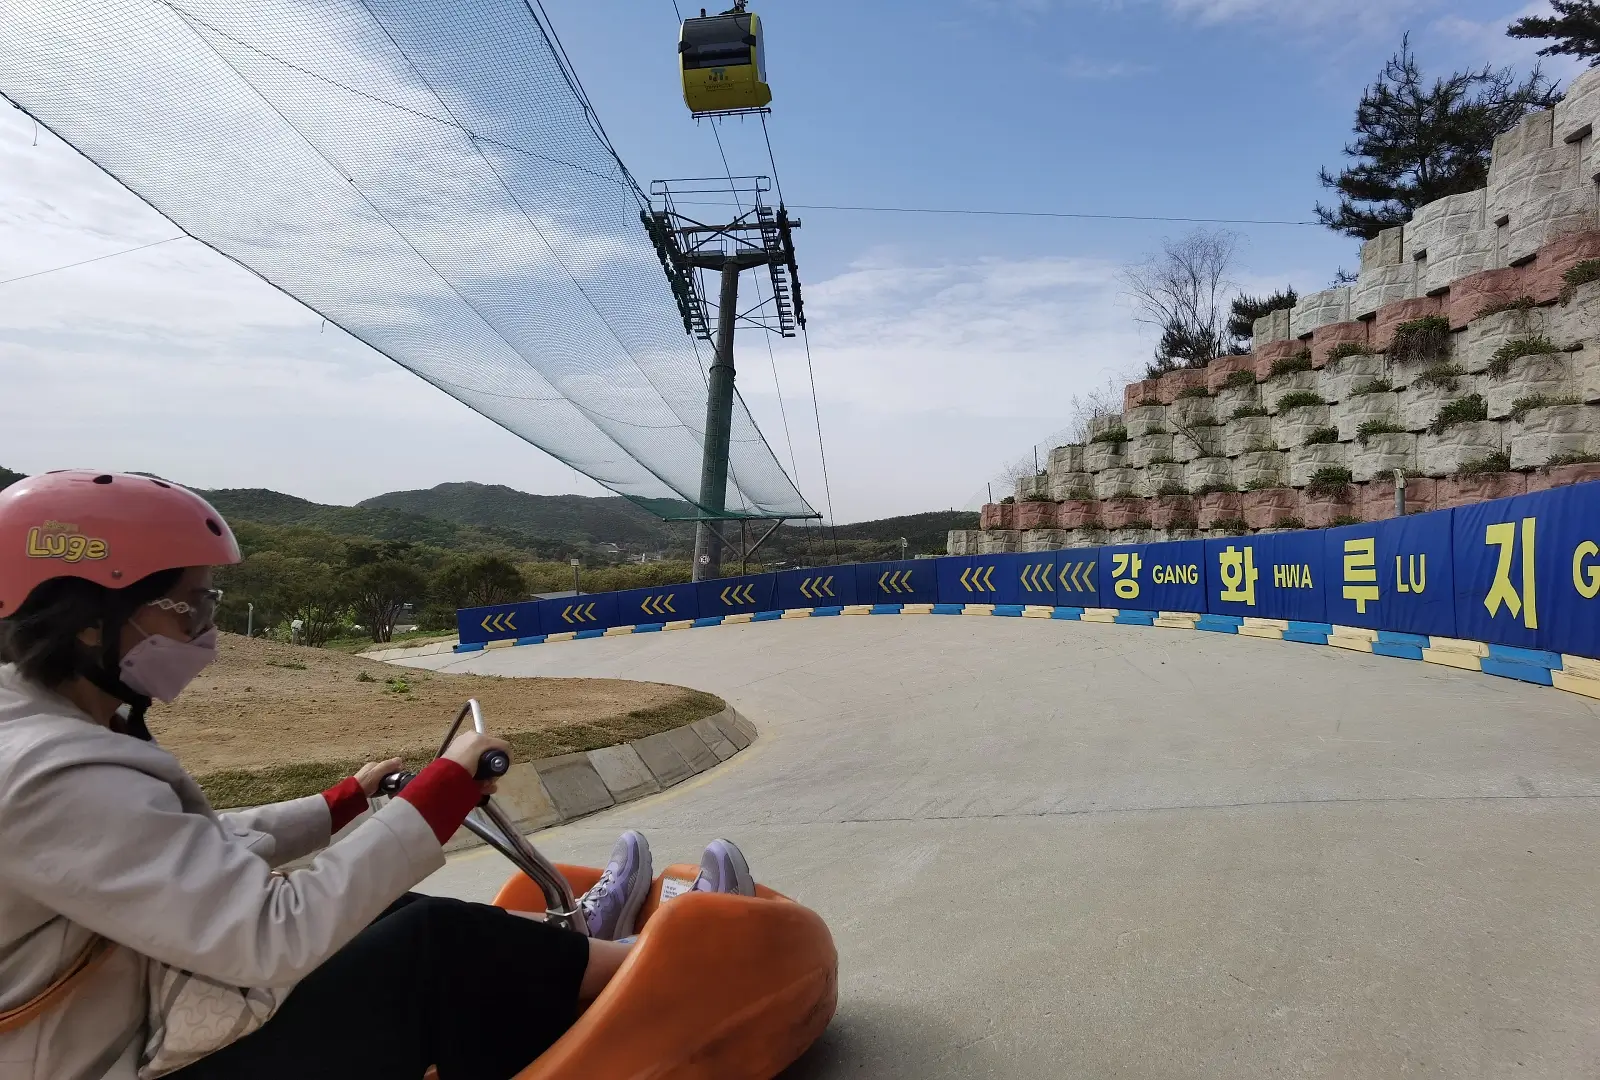 江華島LUGE斜坡滑車